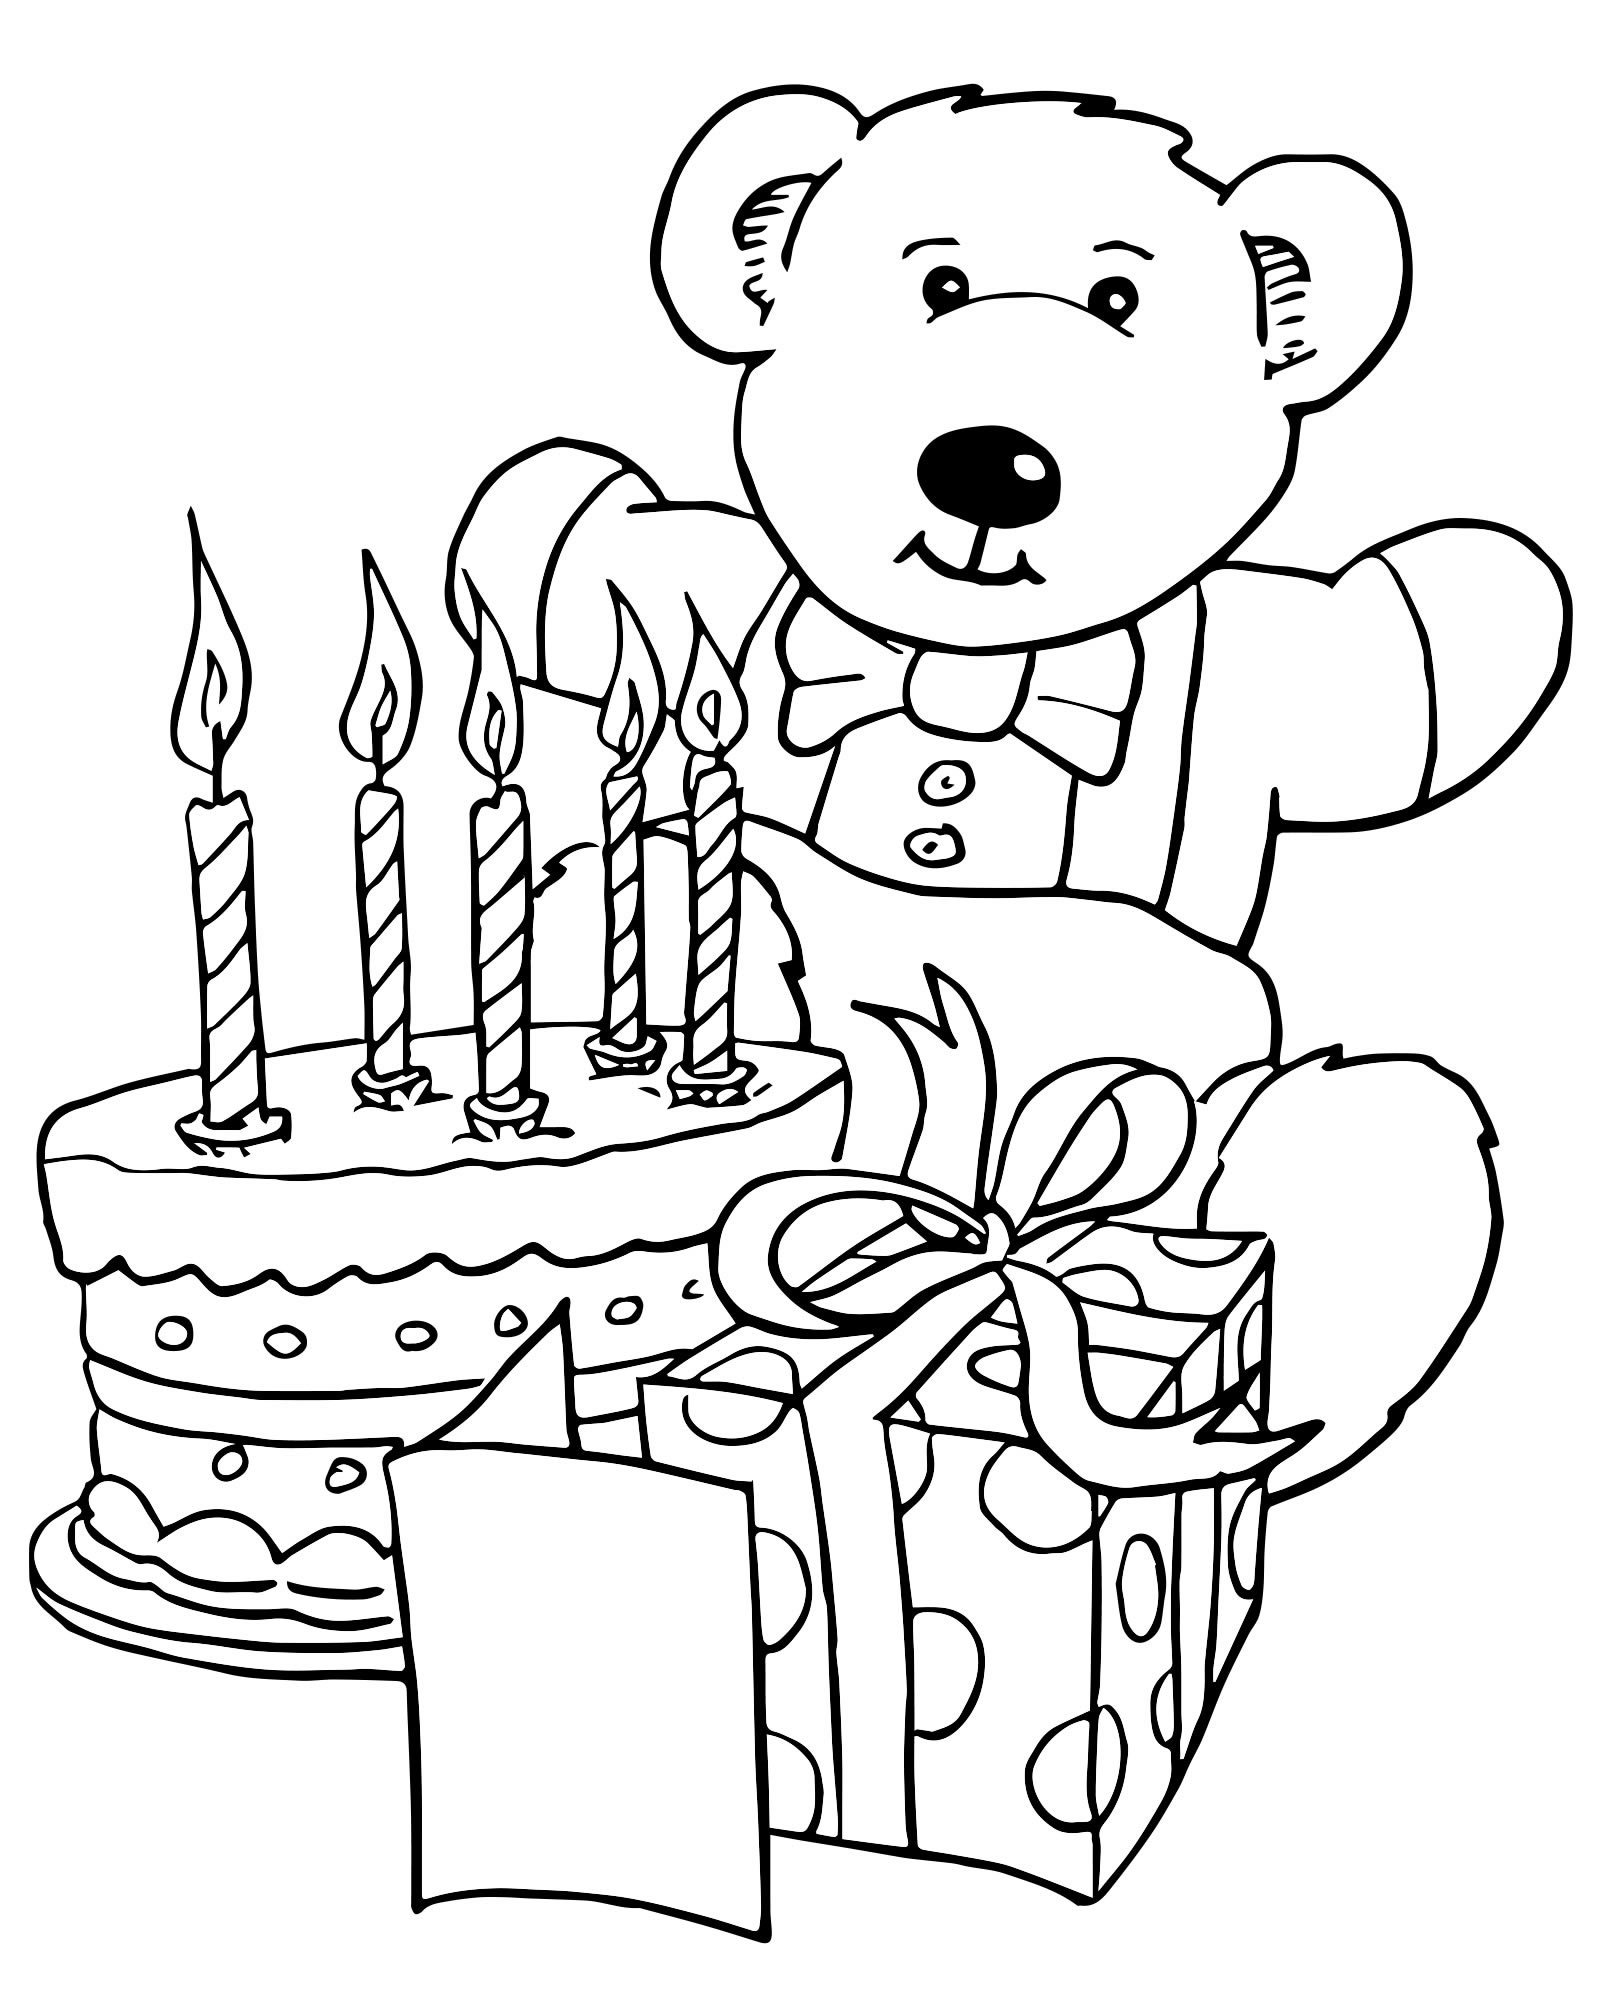 Что можно дедушке нарисовать на день рождения. Раскраска "с днем рождения!". День рождения ИА раскраски. Раскраски надкень рождения. Рисунок на день рождения.